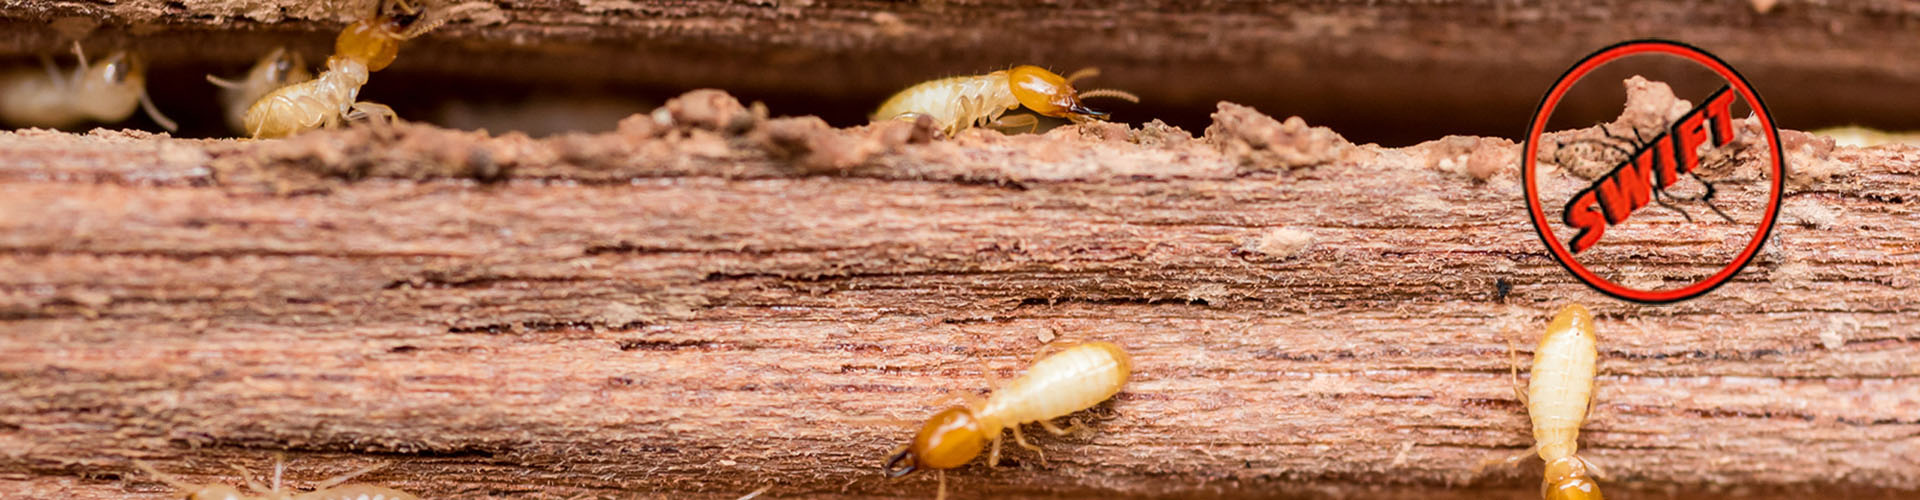 SWIFT Termite Control